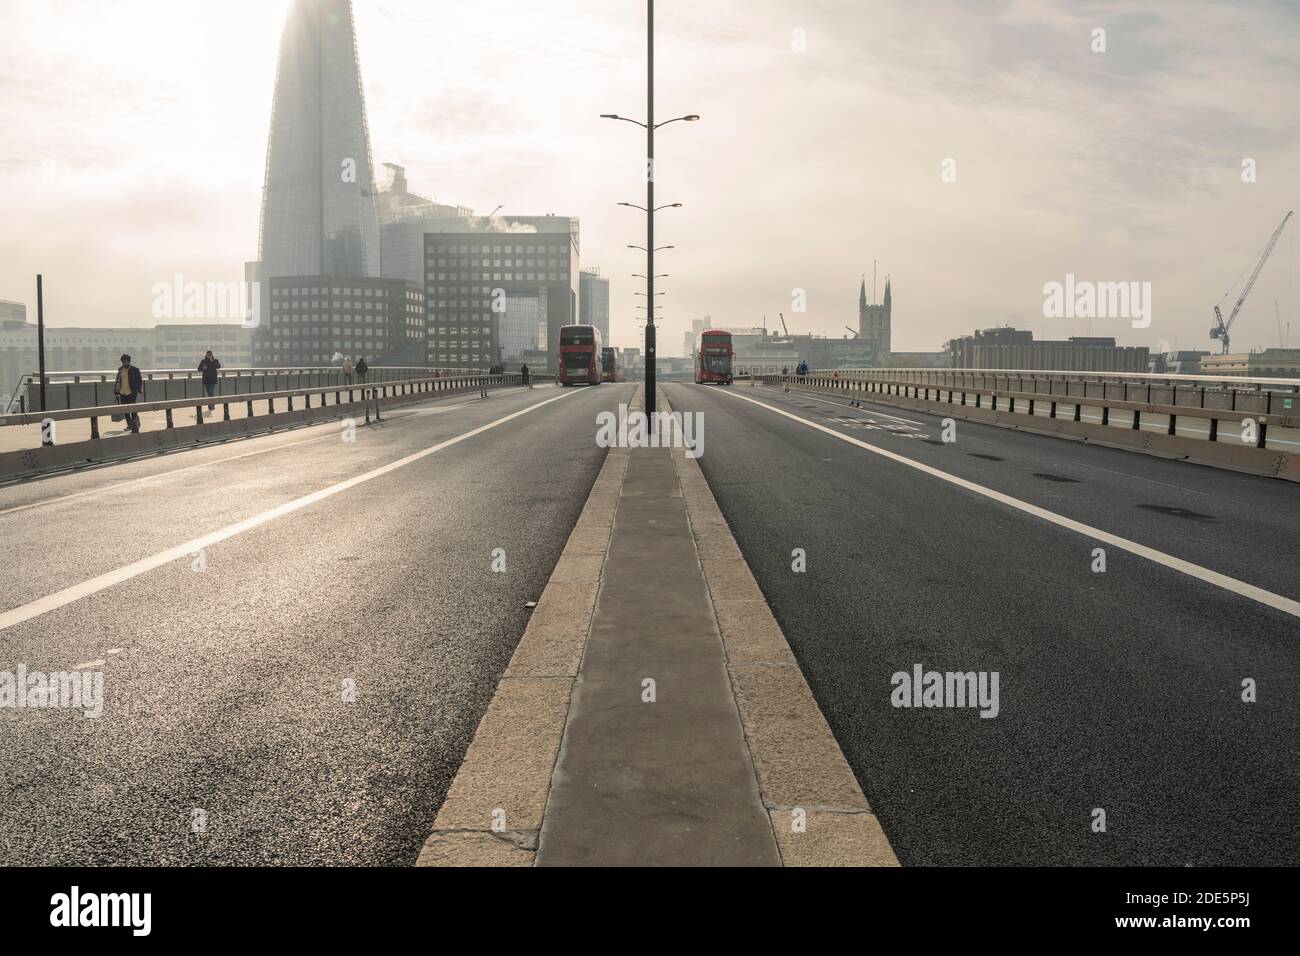 Ruhige, leere und menschenleere Straßen und Straßen in London in Coronavirus Covid-19 Pandemiesperre am Shard an der London Bridge, ohne Verkehr pendeln während der Hauptverkehrszeit pendeln Stockfoto